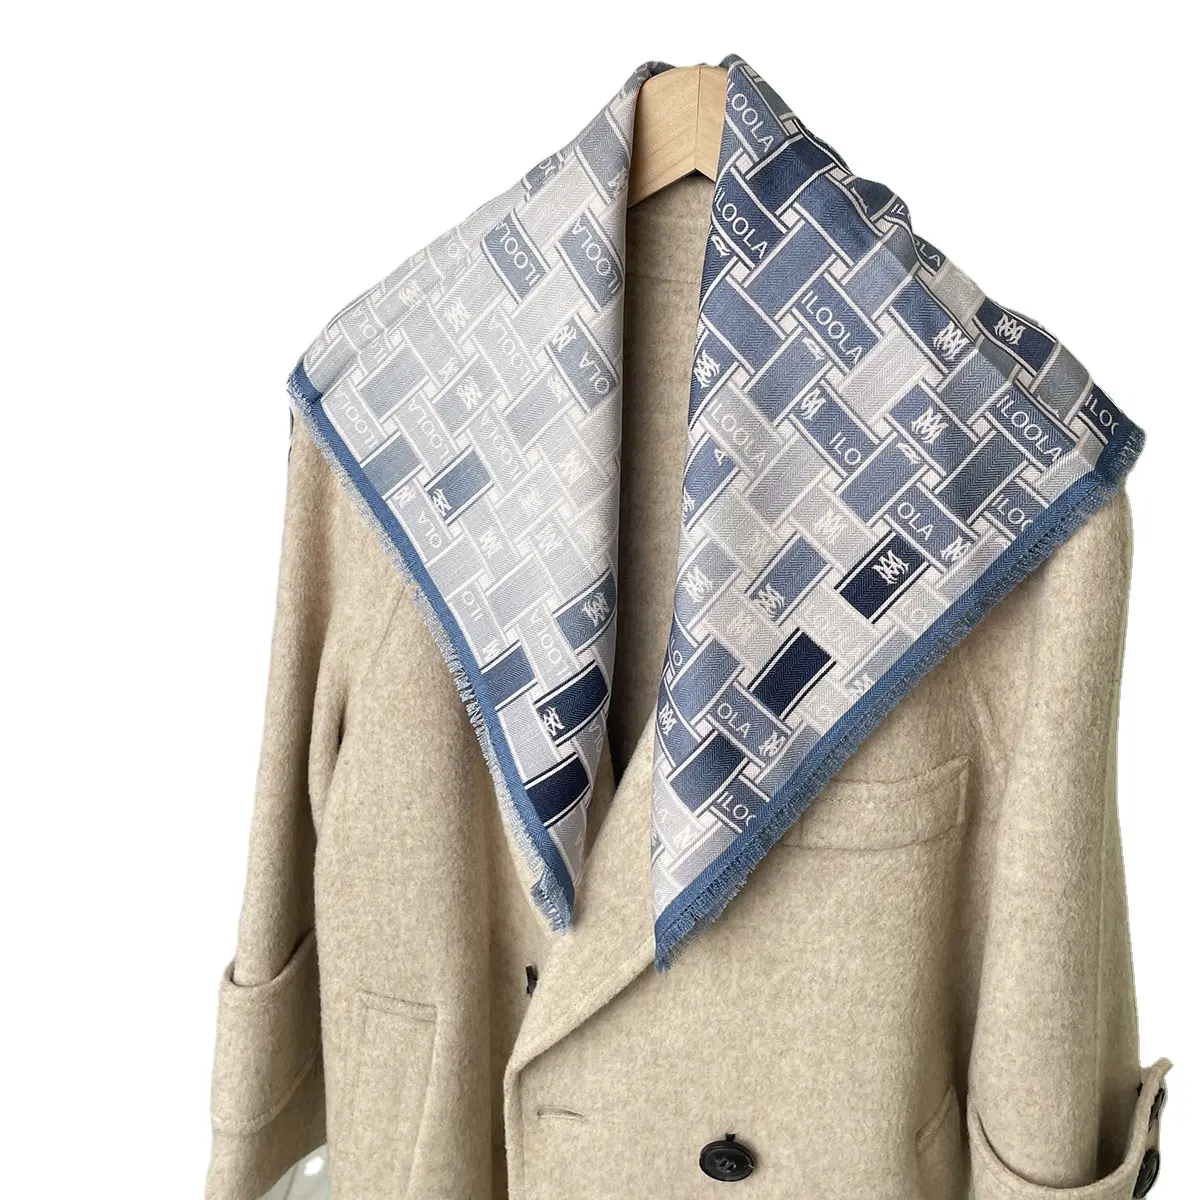 चीन में रेशम और ऊन उच्च गुणवत्ता वाले प्रिंट स्कार्फ